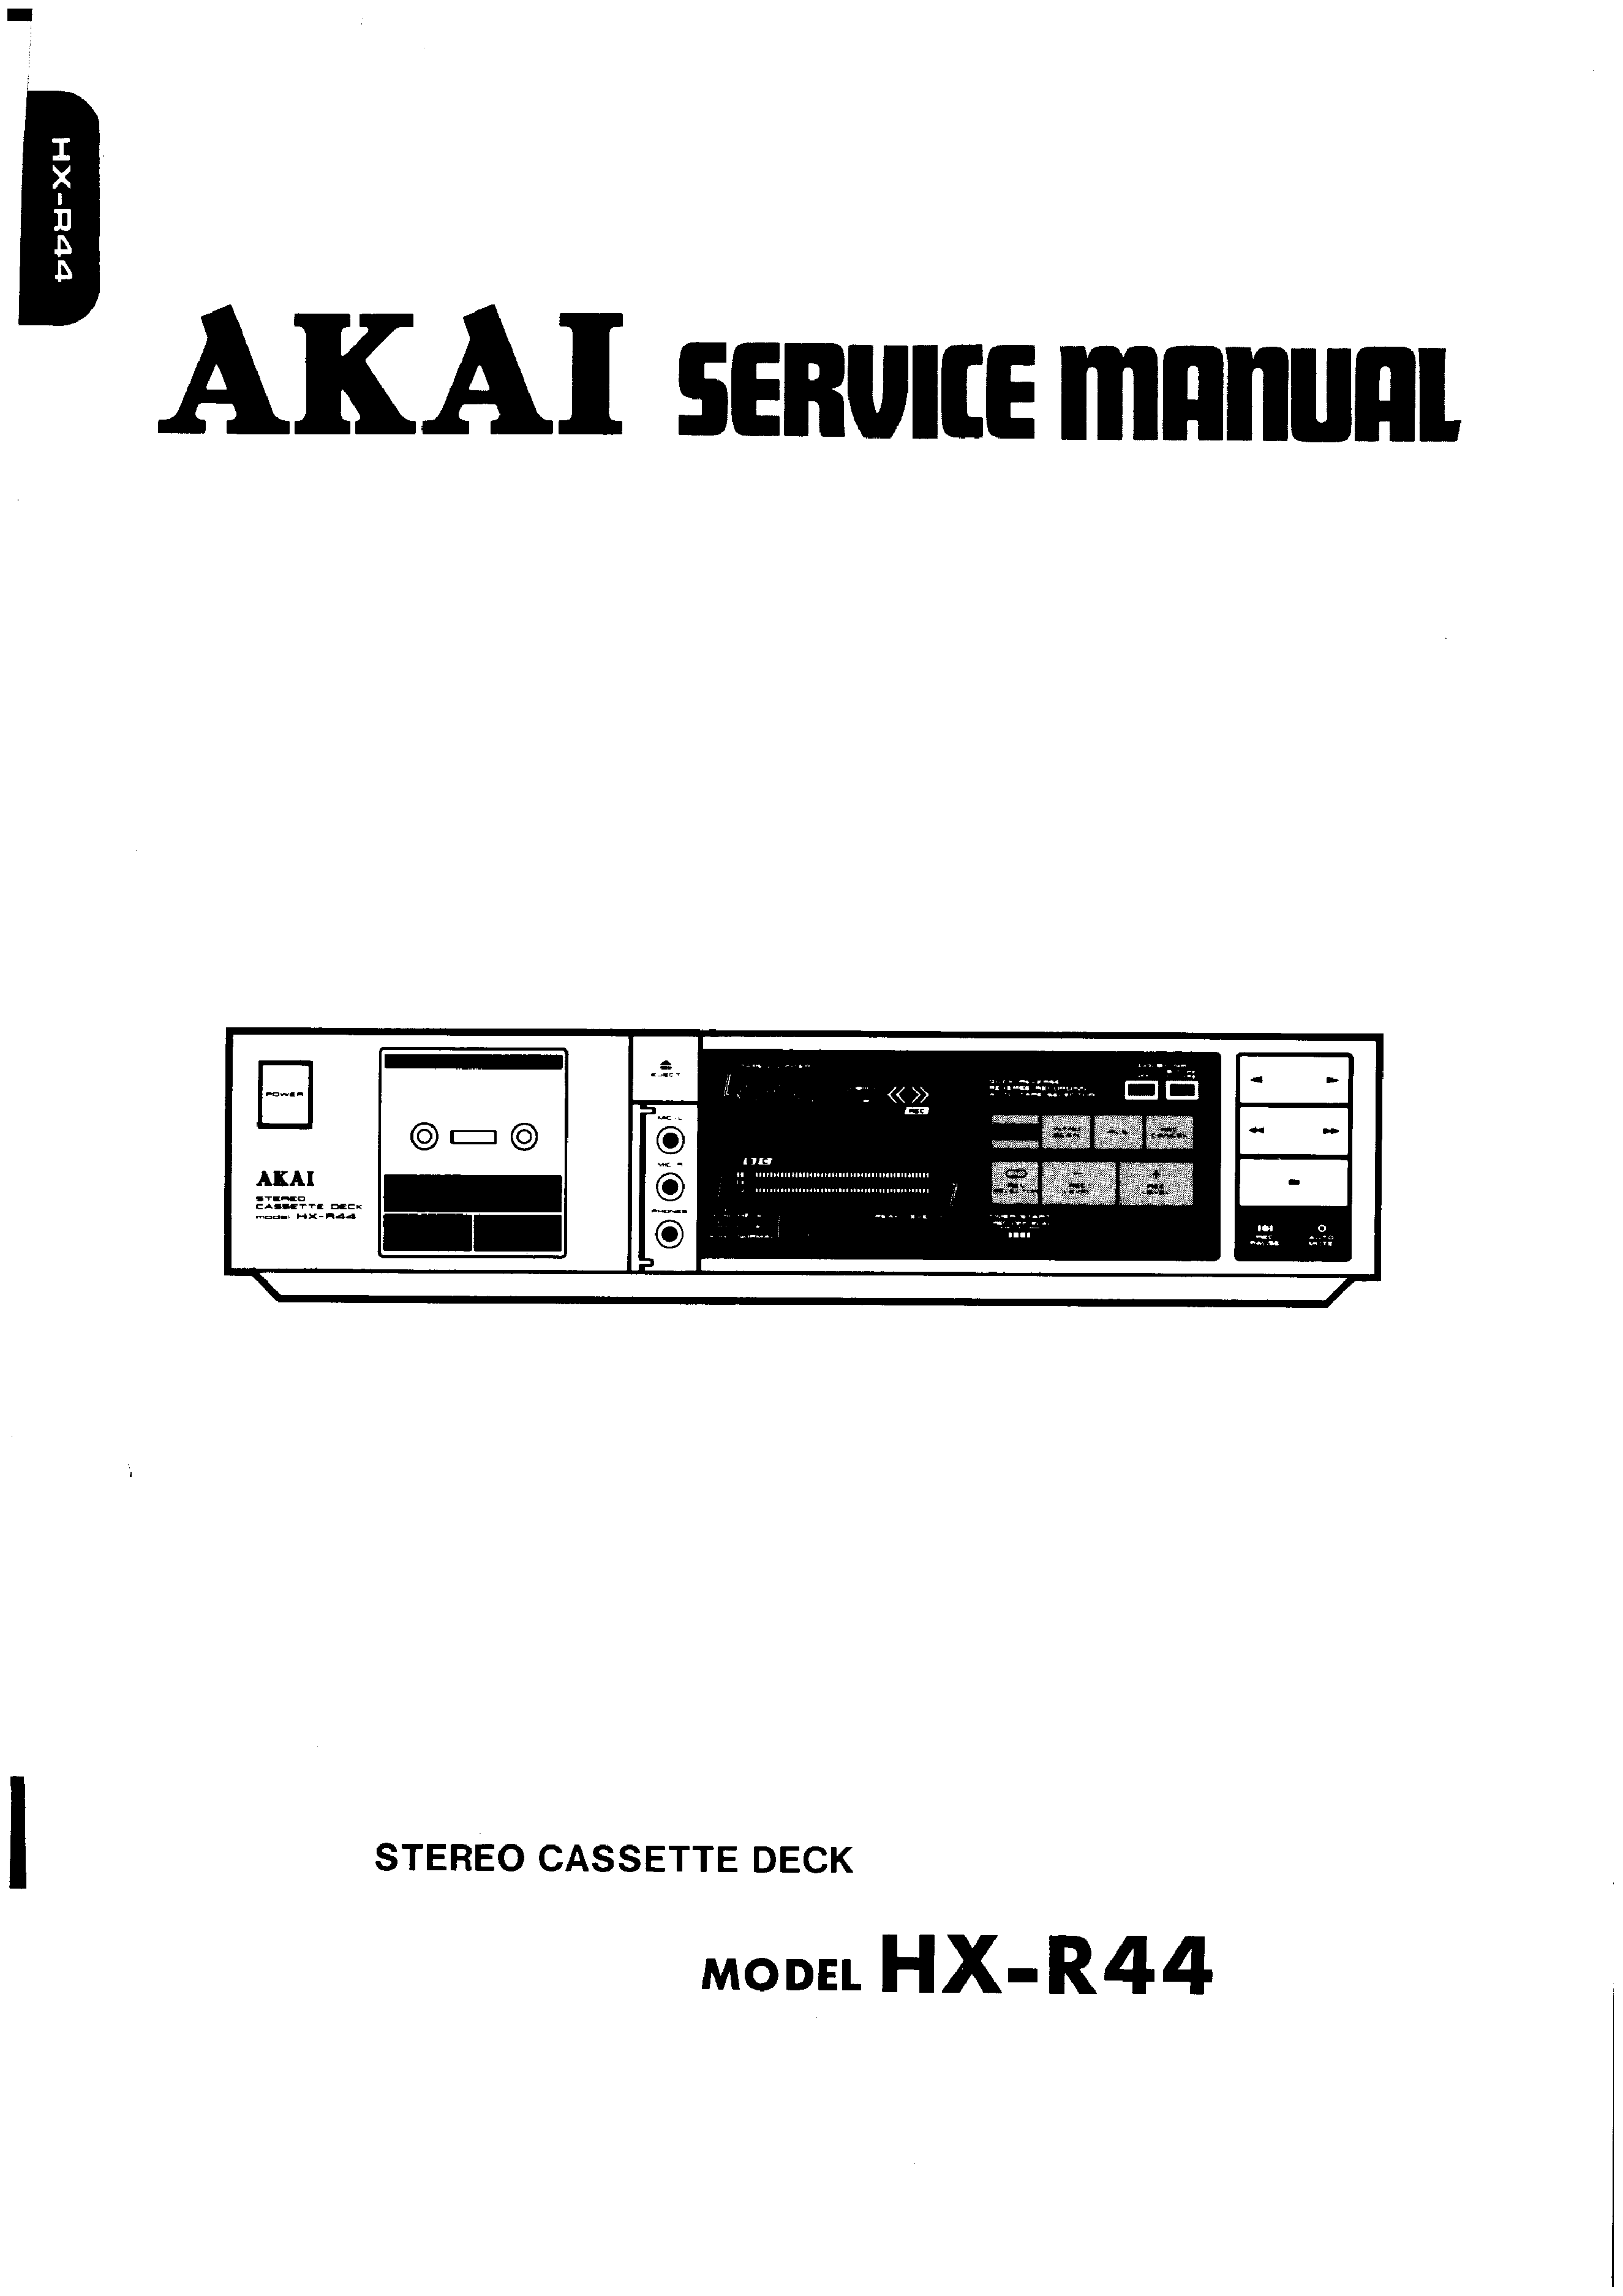 ORIGINALI Service Manual Schema Elettrico AKAI hx-v12w 